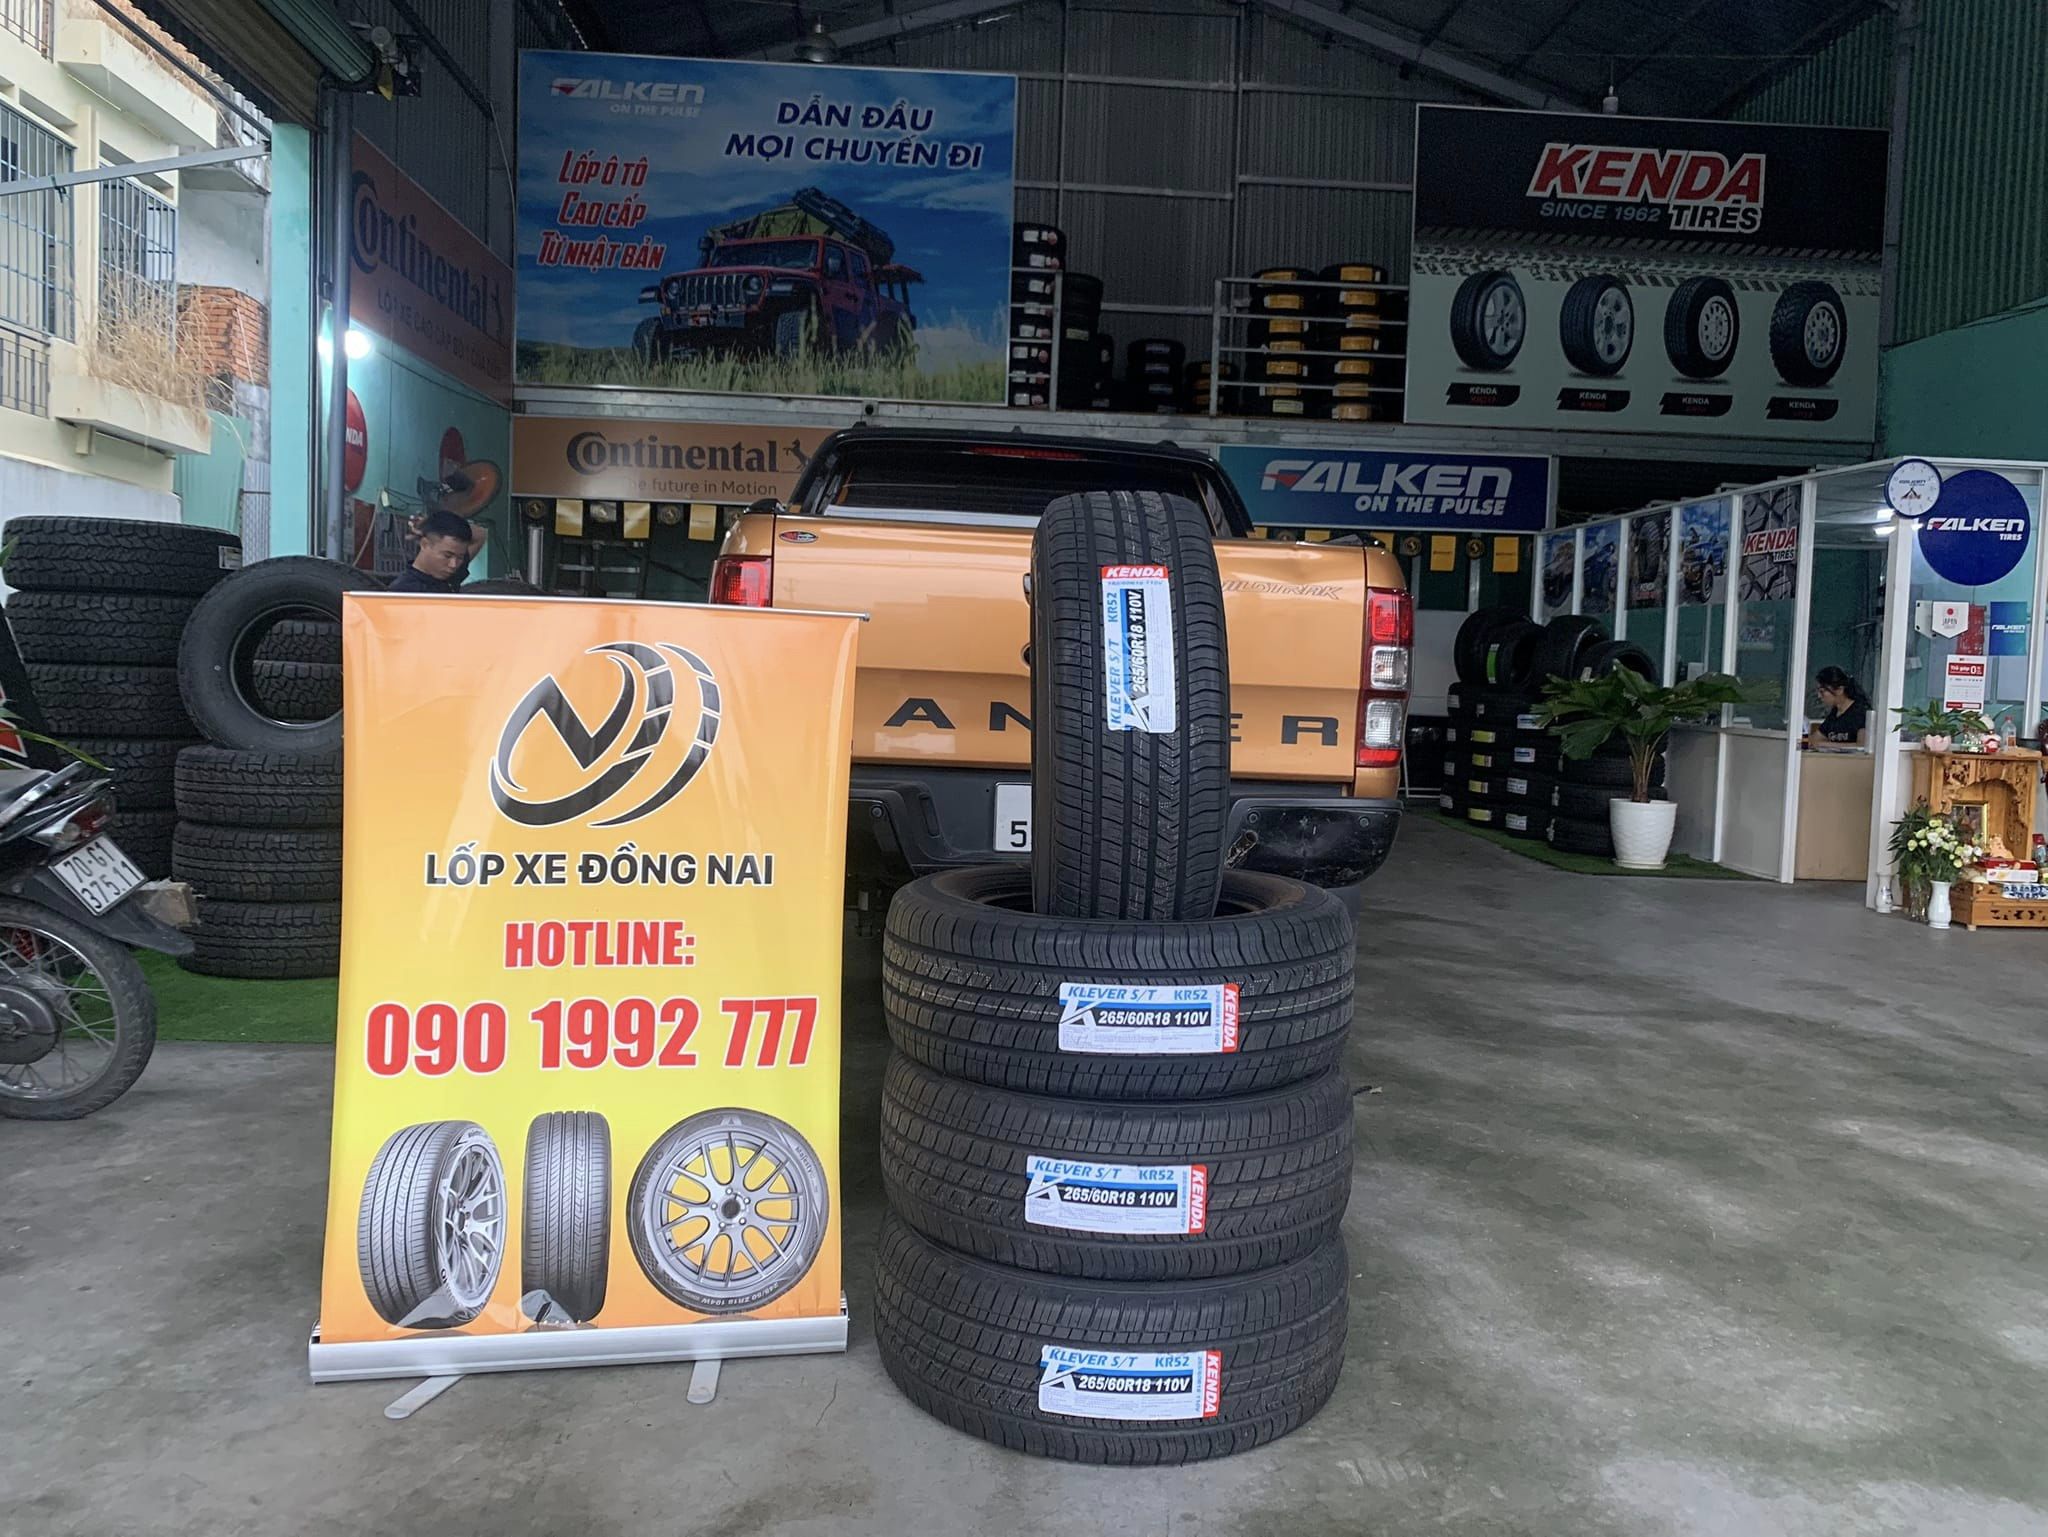 TƯ VẤN : Thay lốp xe Ford Ranger Wildtrack chính hãng ở Trảng Bom, Đồng Nai.